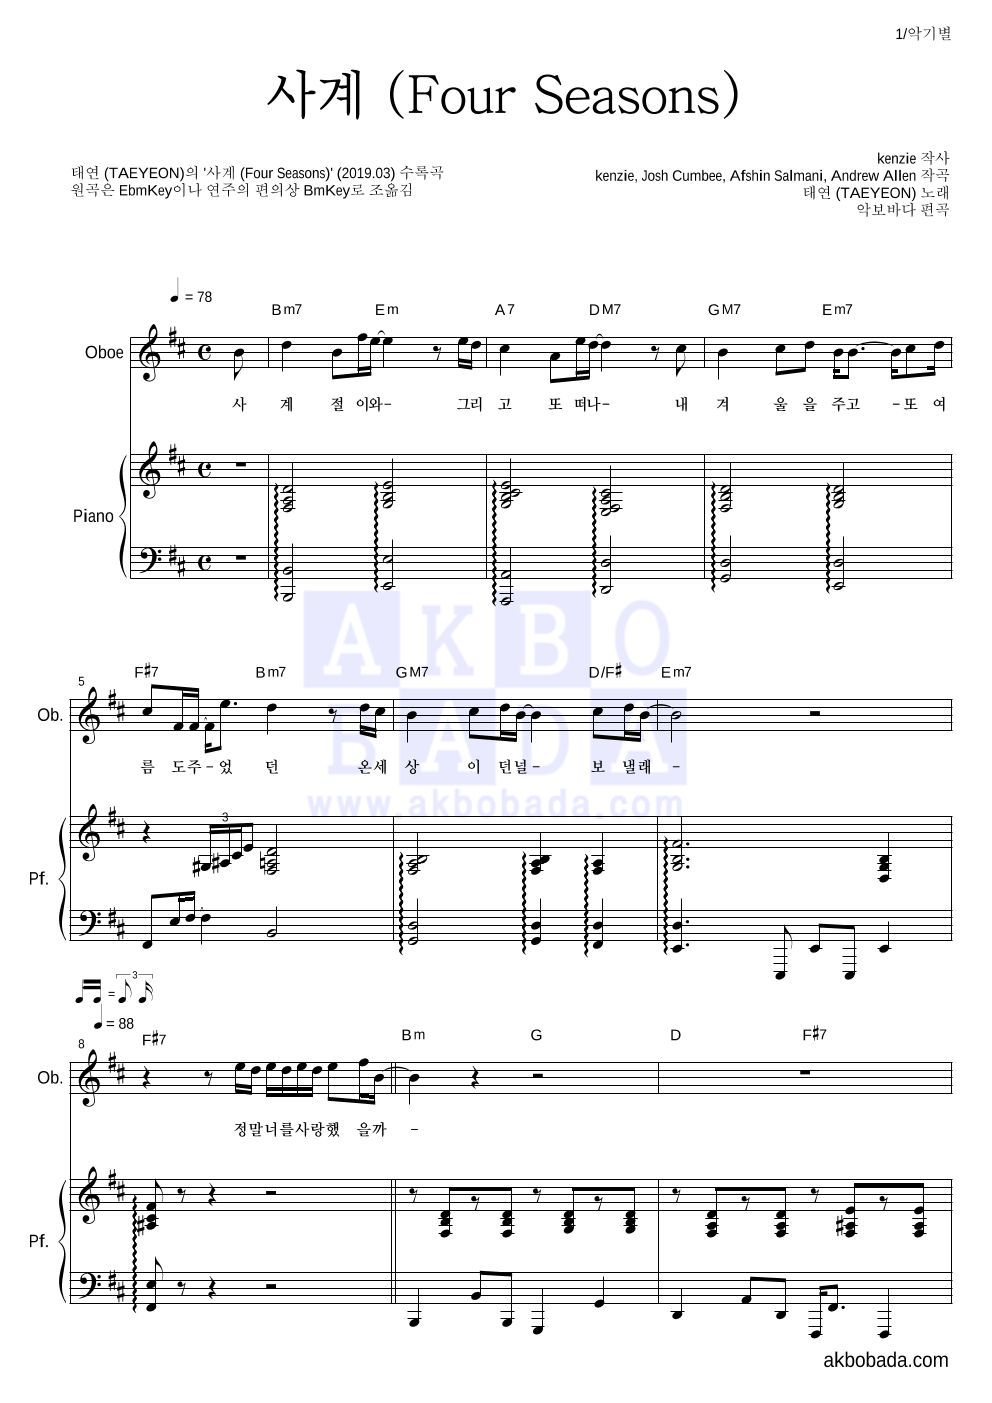 태연 - 사계 (Four Seasons) 오보에&피아노 악보 